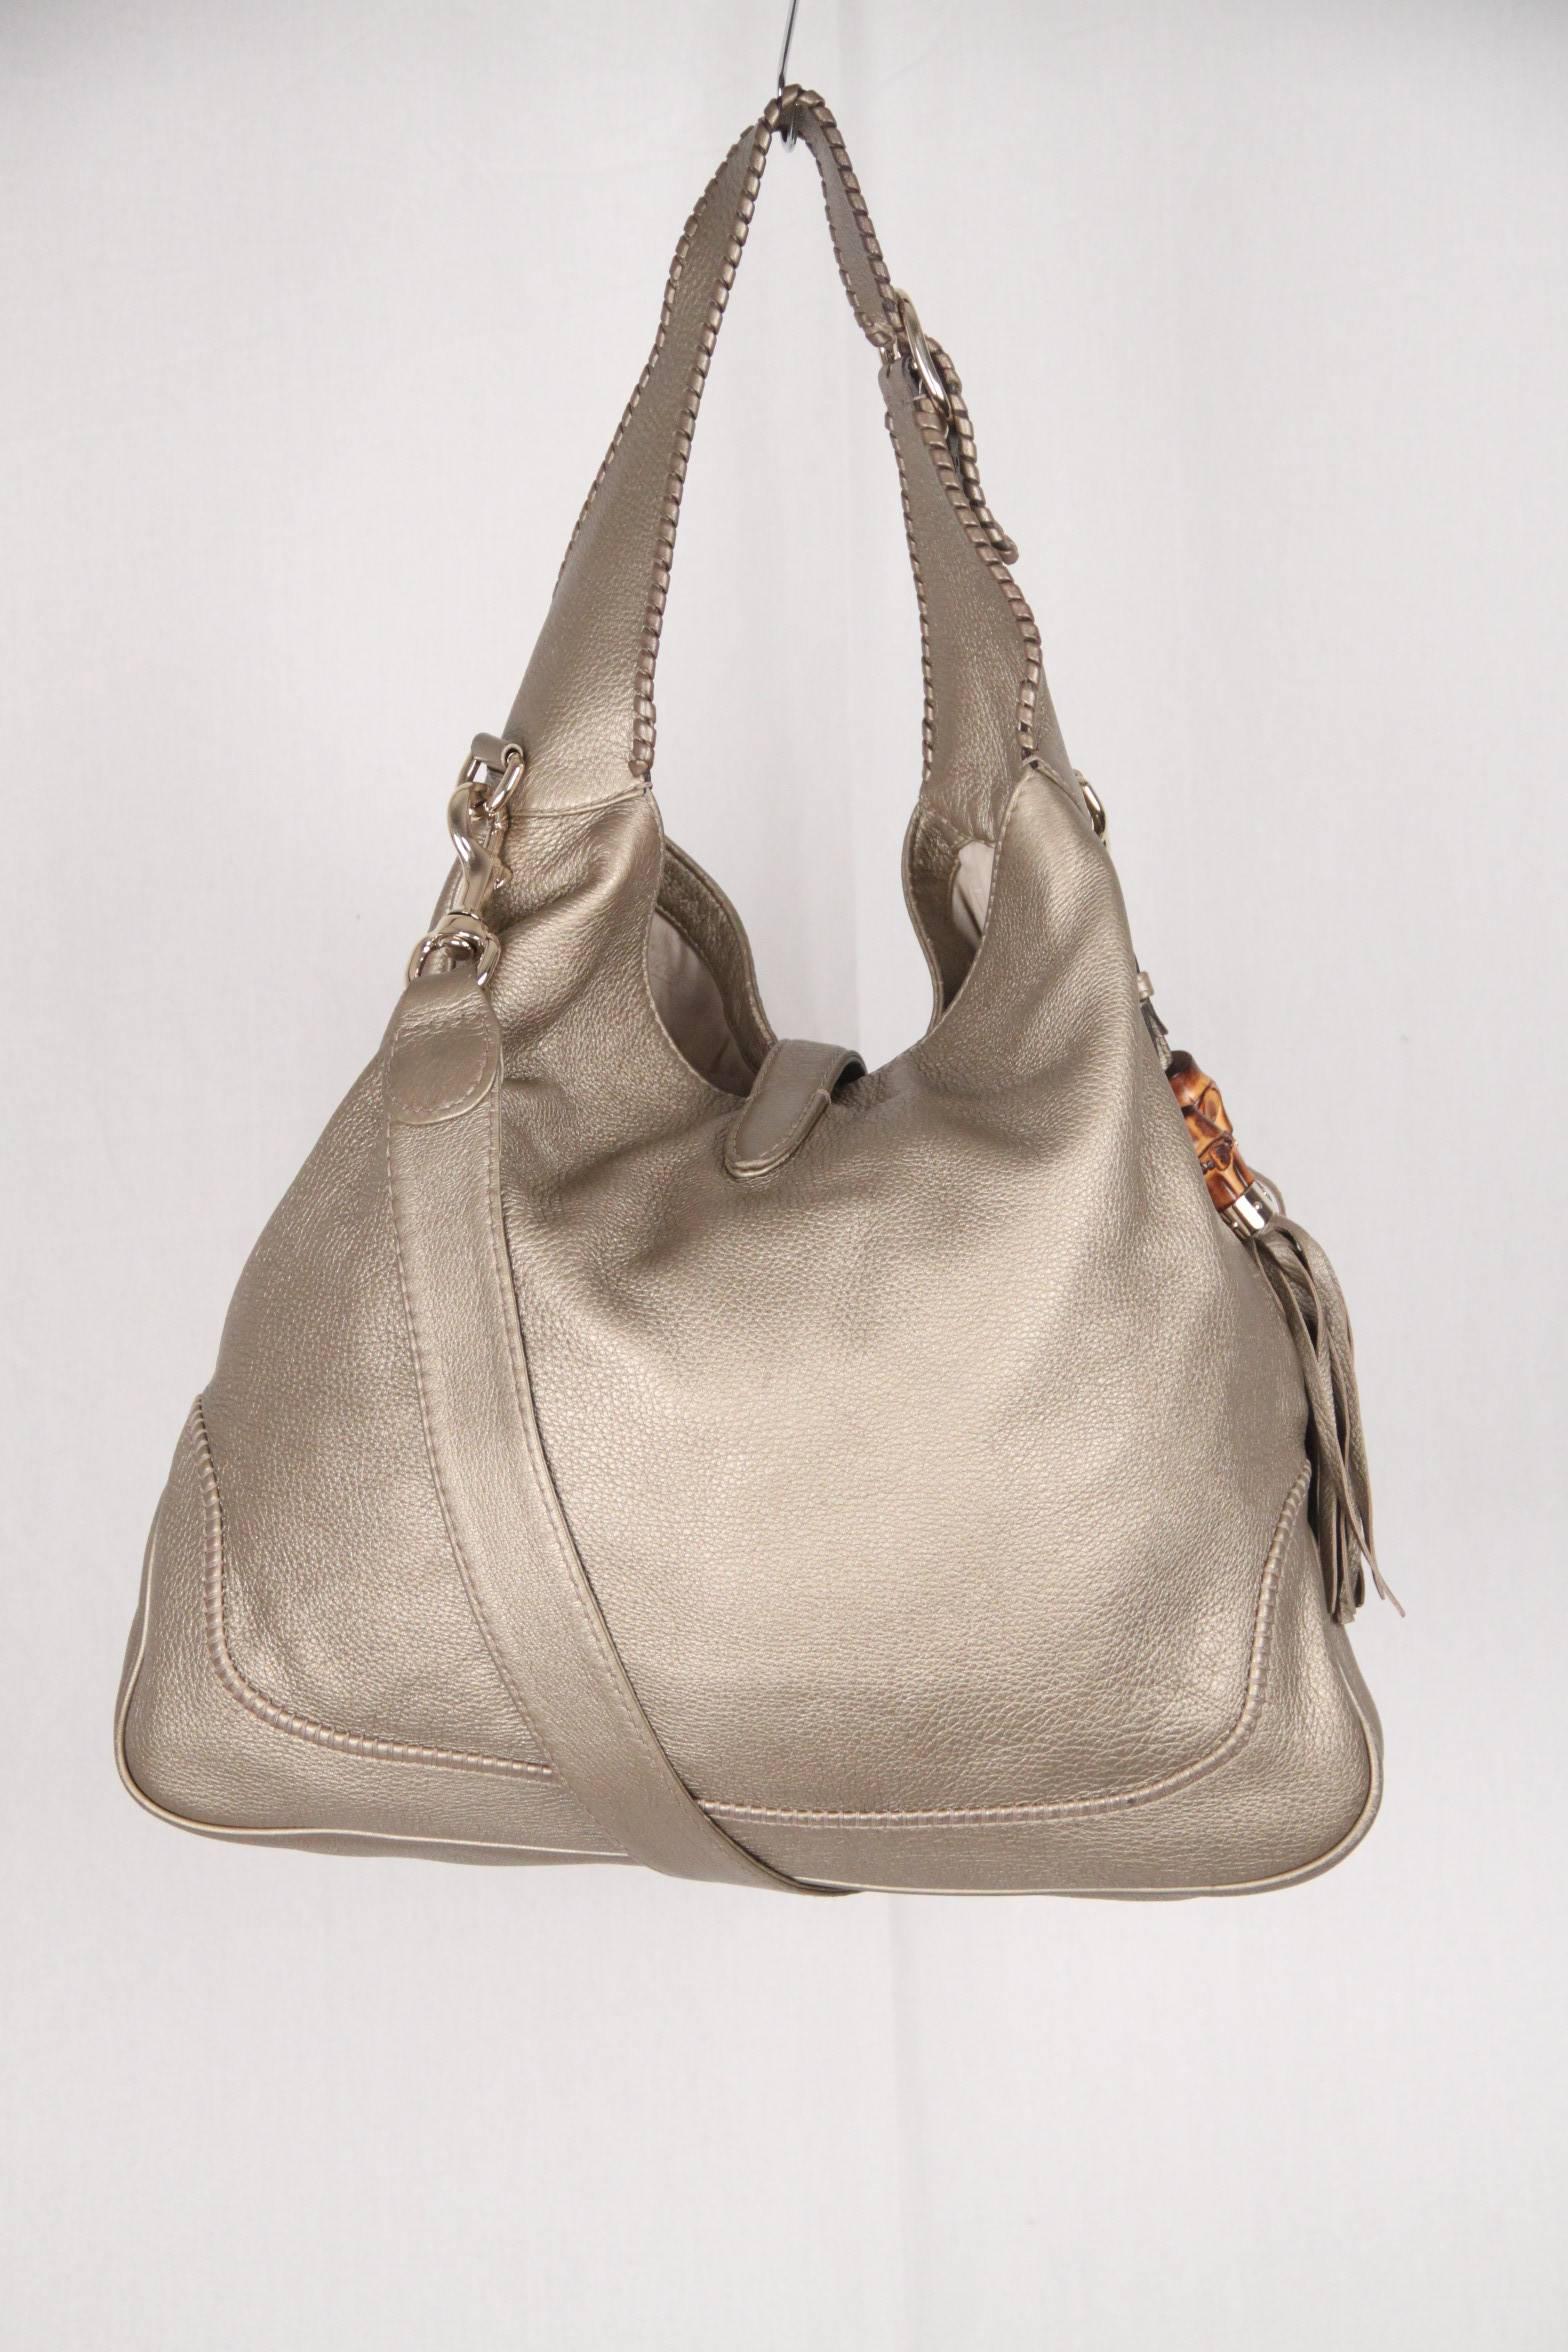 Women's GUCCI Metallic Leather NEW JACKIE Bag HOBO